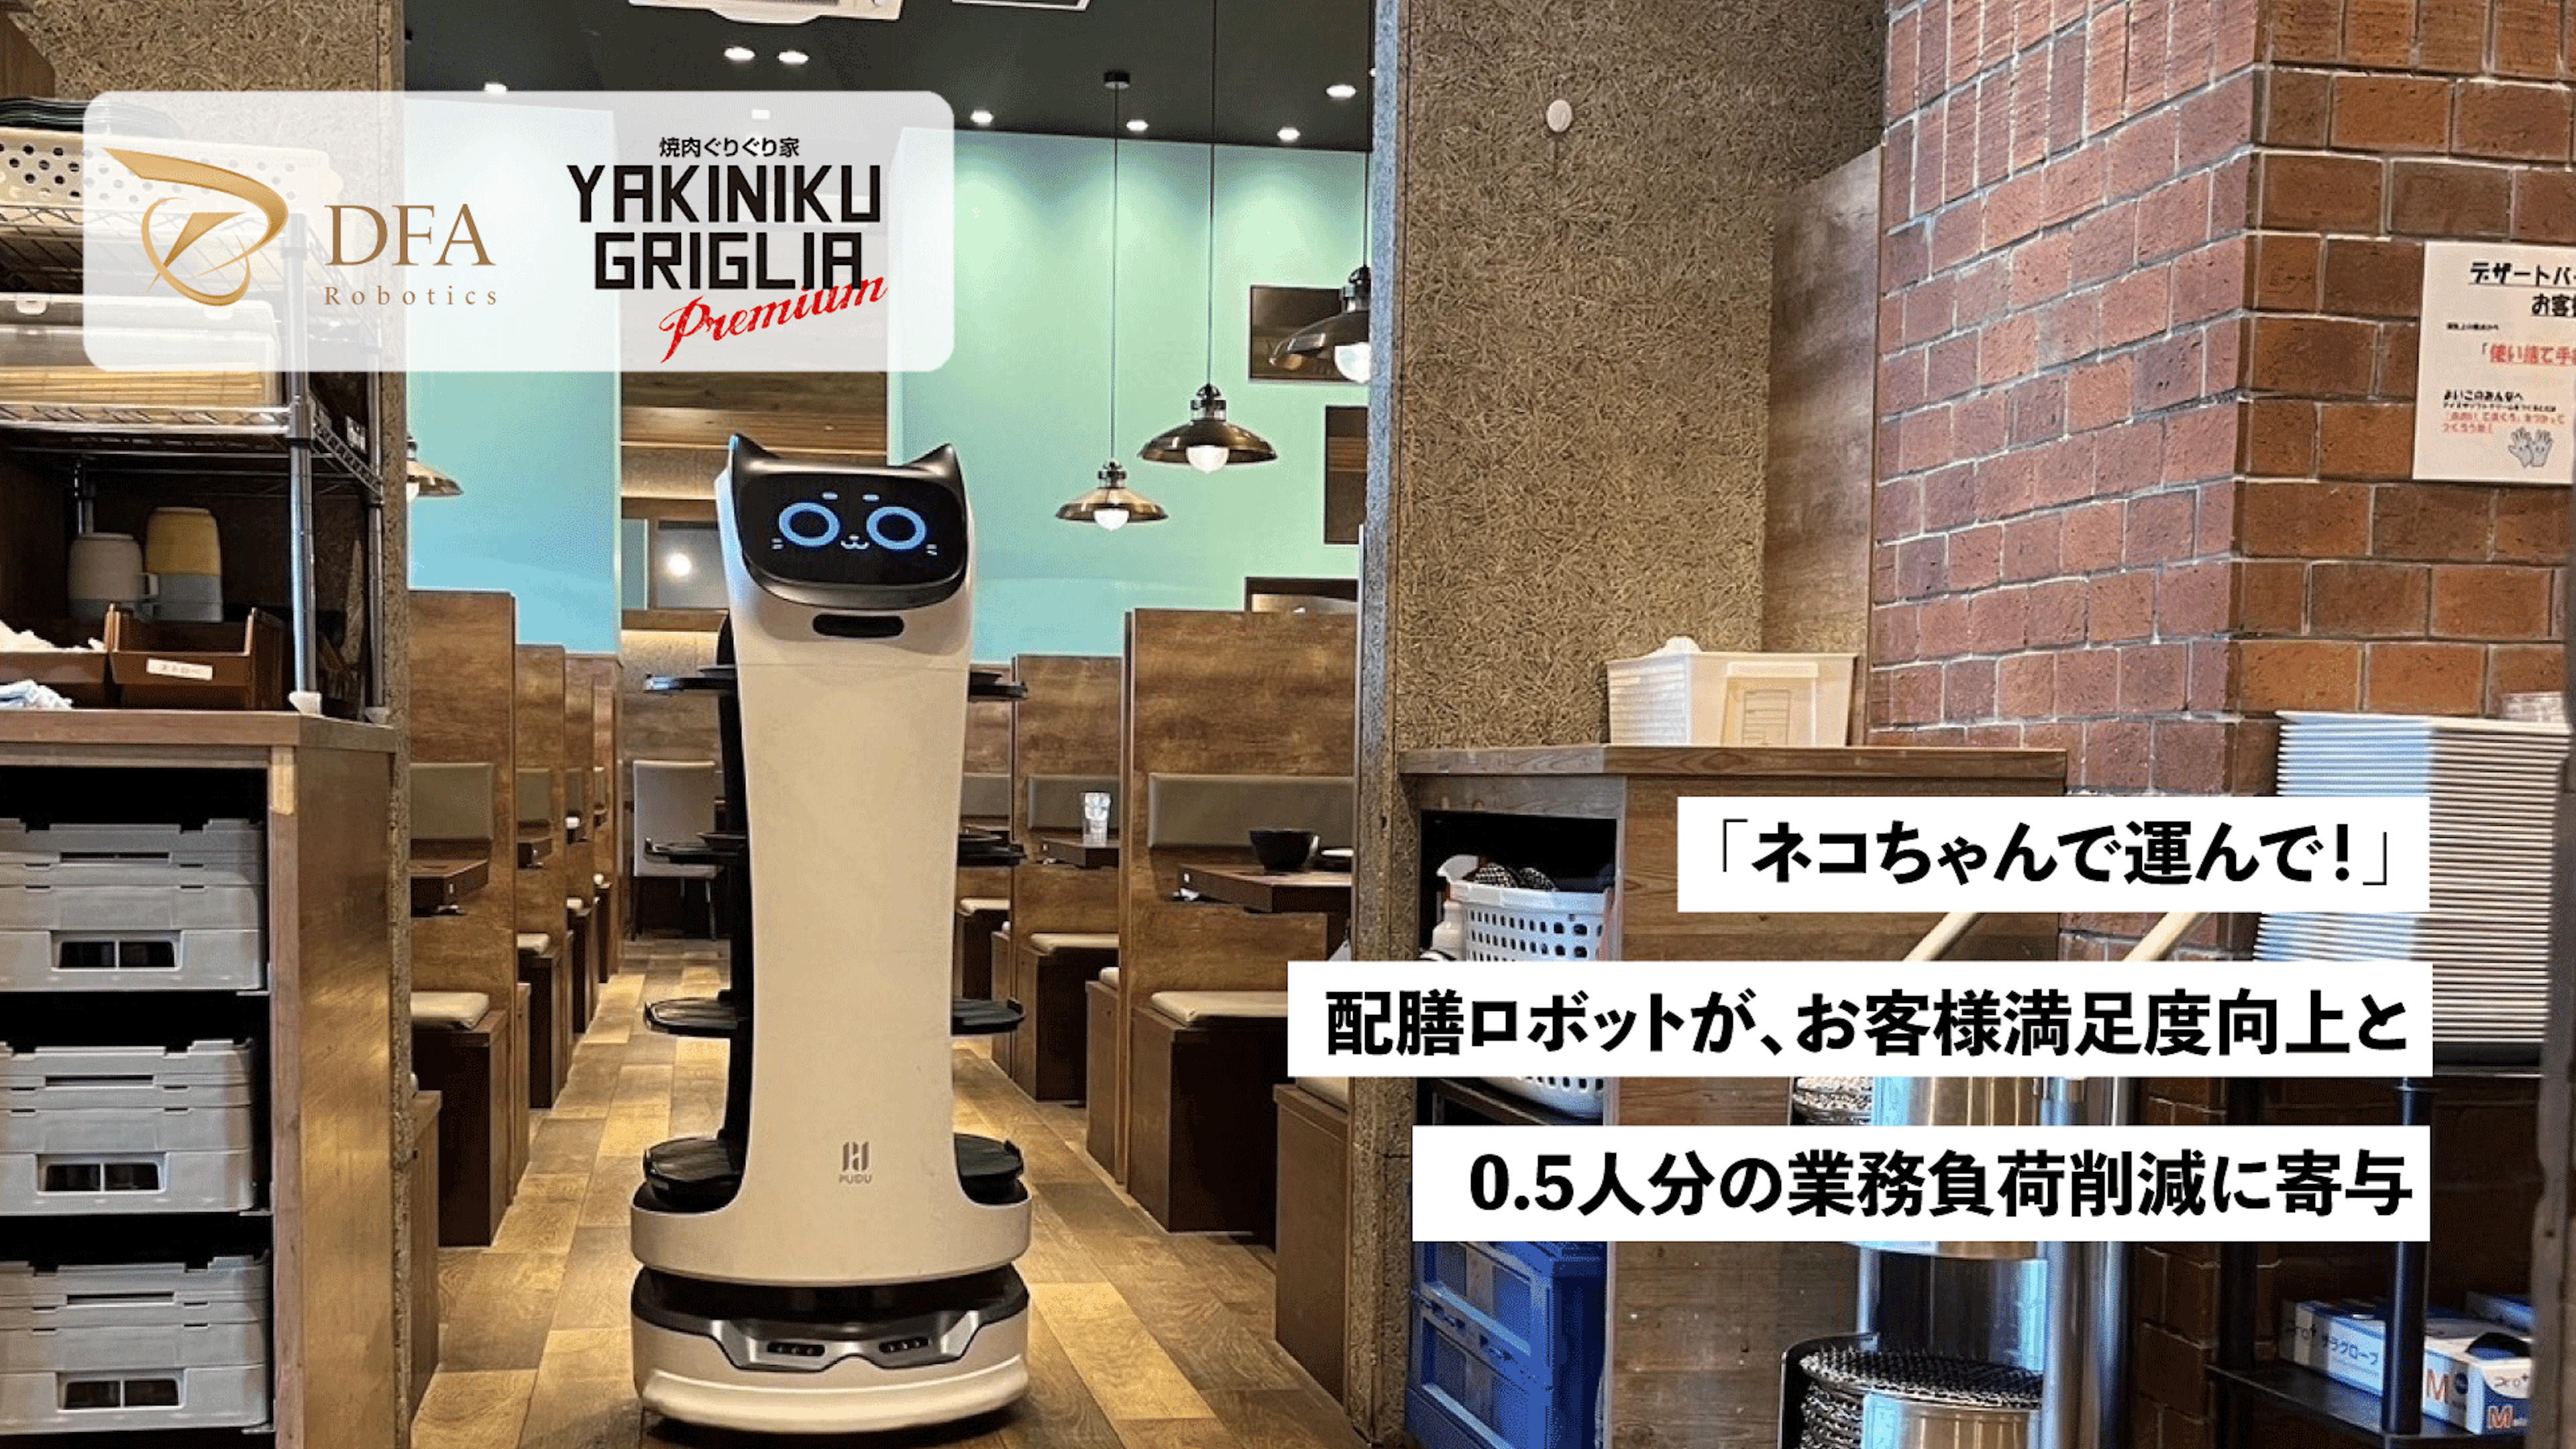 「ネコちゃんで運んで！」
配膳ロボットが、お客様満足度向上と0.5人分の業務負荷削減に寄与のキービジュアル